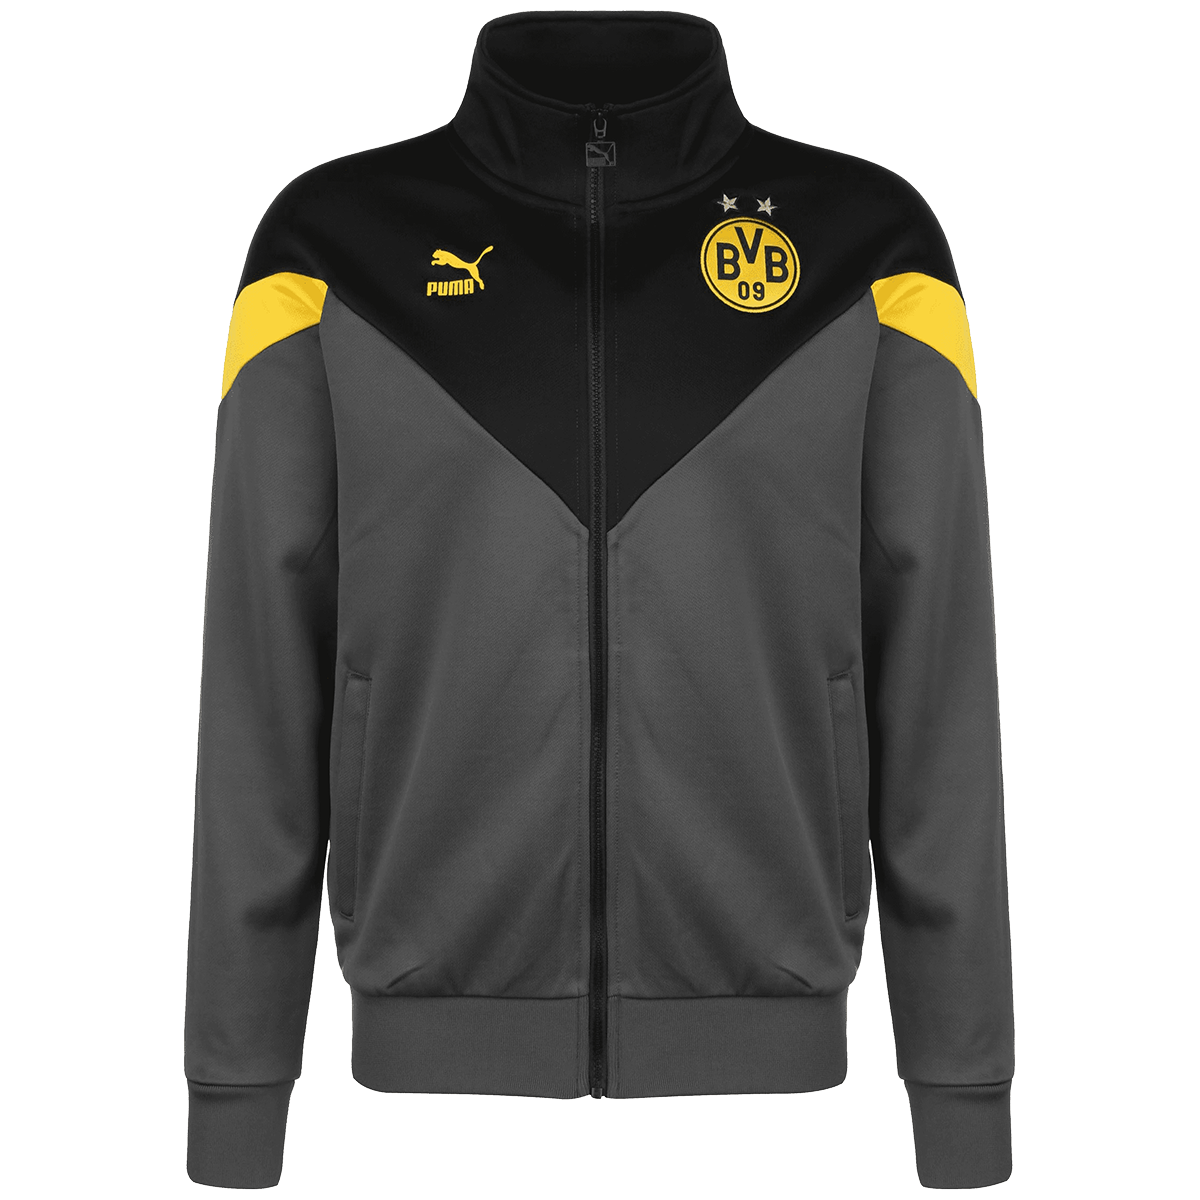 Puma BVB Iconic MCS Track Jacket 756720 02 Borussia Dortmund 09